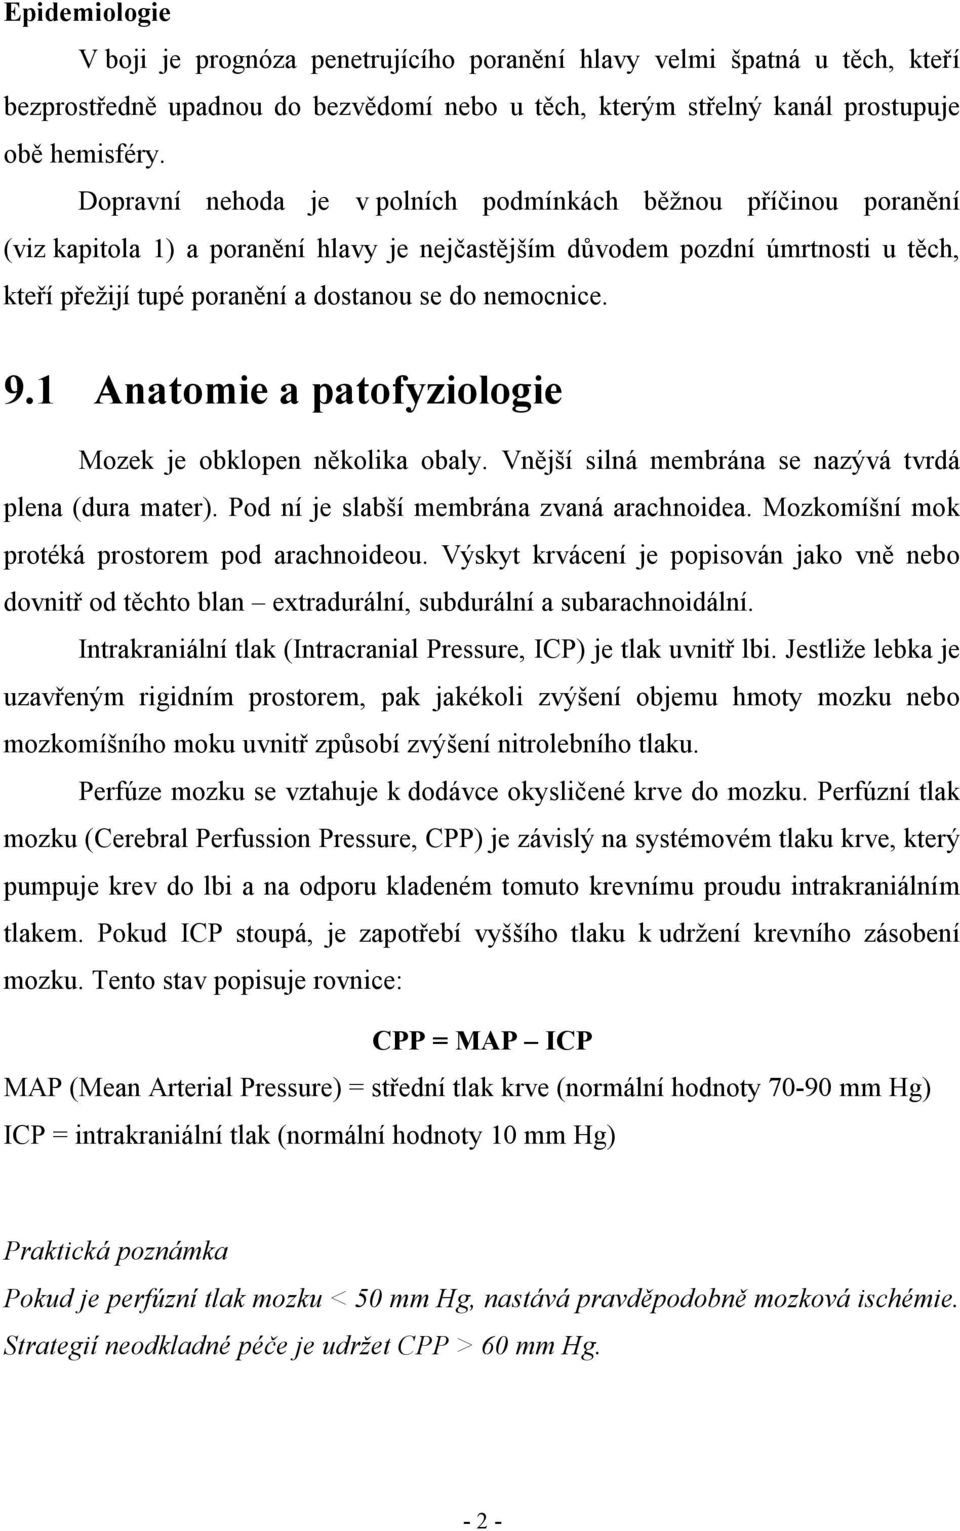 nemocnice. 9.1 Anatomie a patofyziologie Mozek je obklopen několika obaly. Vnější silná membrána se nazývá tvrdá plena (dura mater). Pod ní je slabší membrána zvaná arachnoidea.